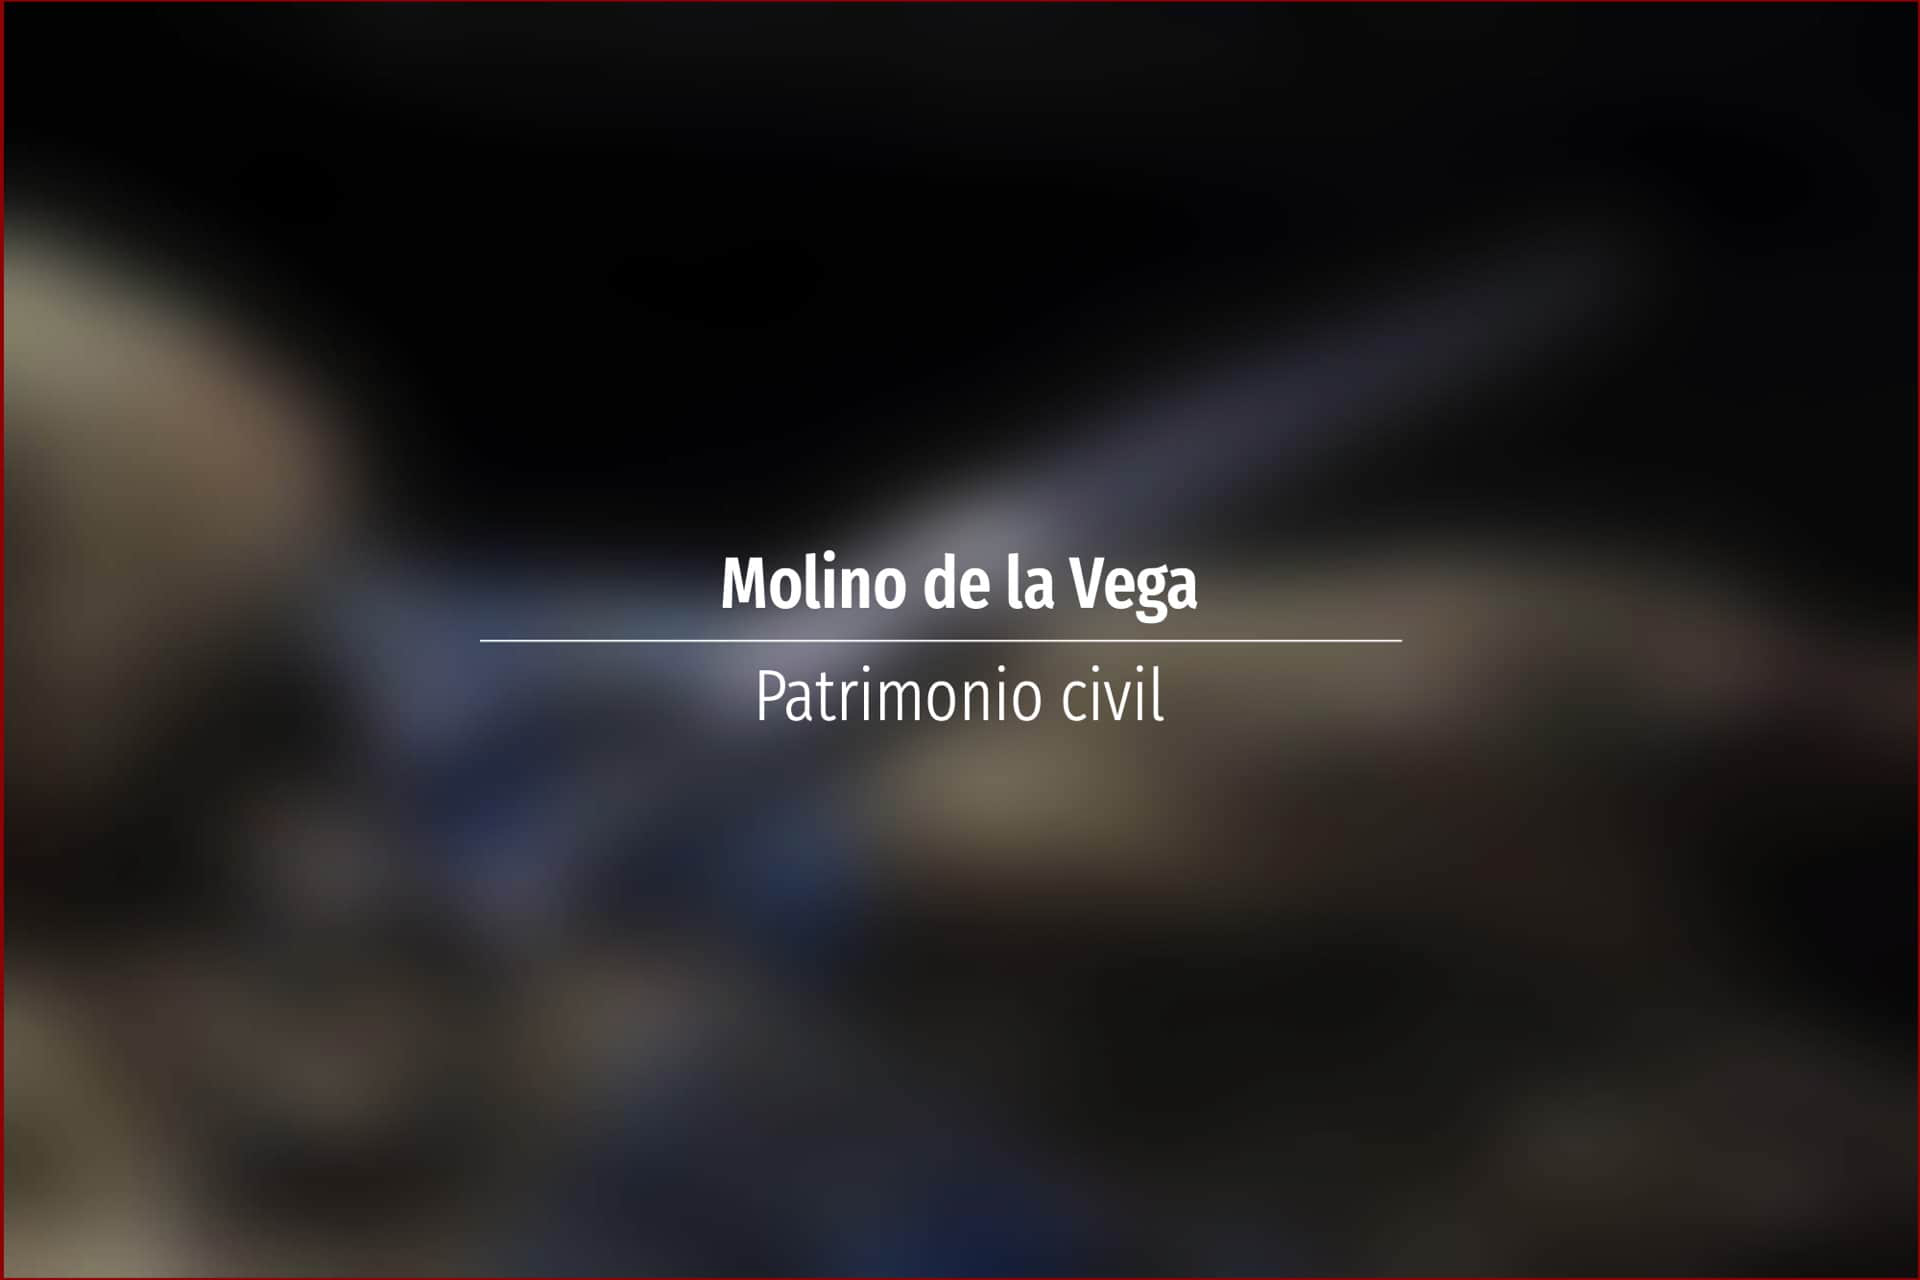 Molino de la Vega